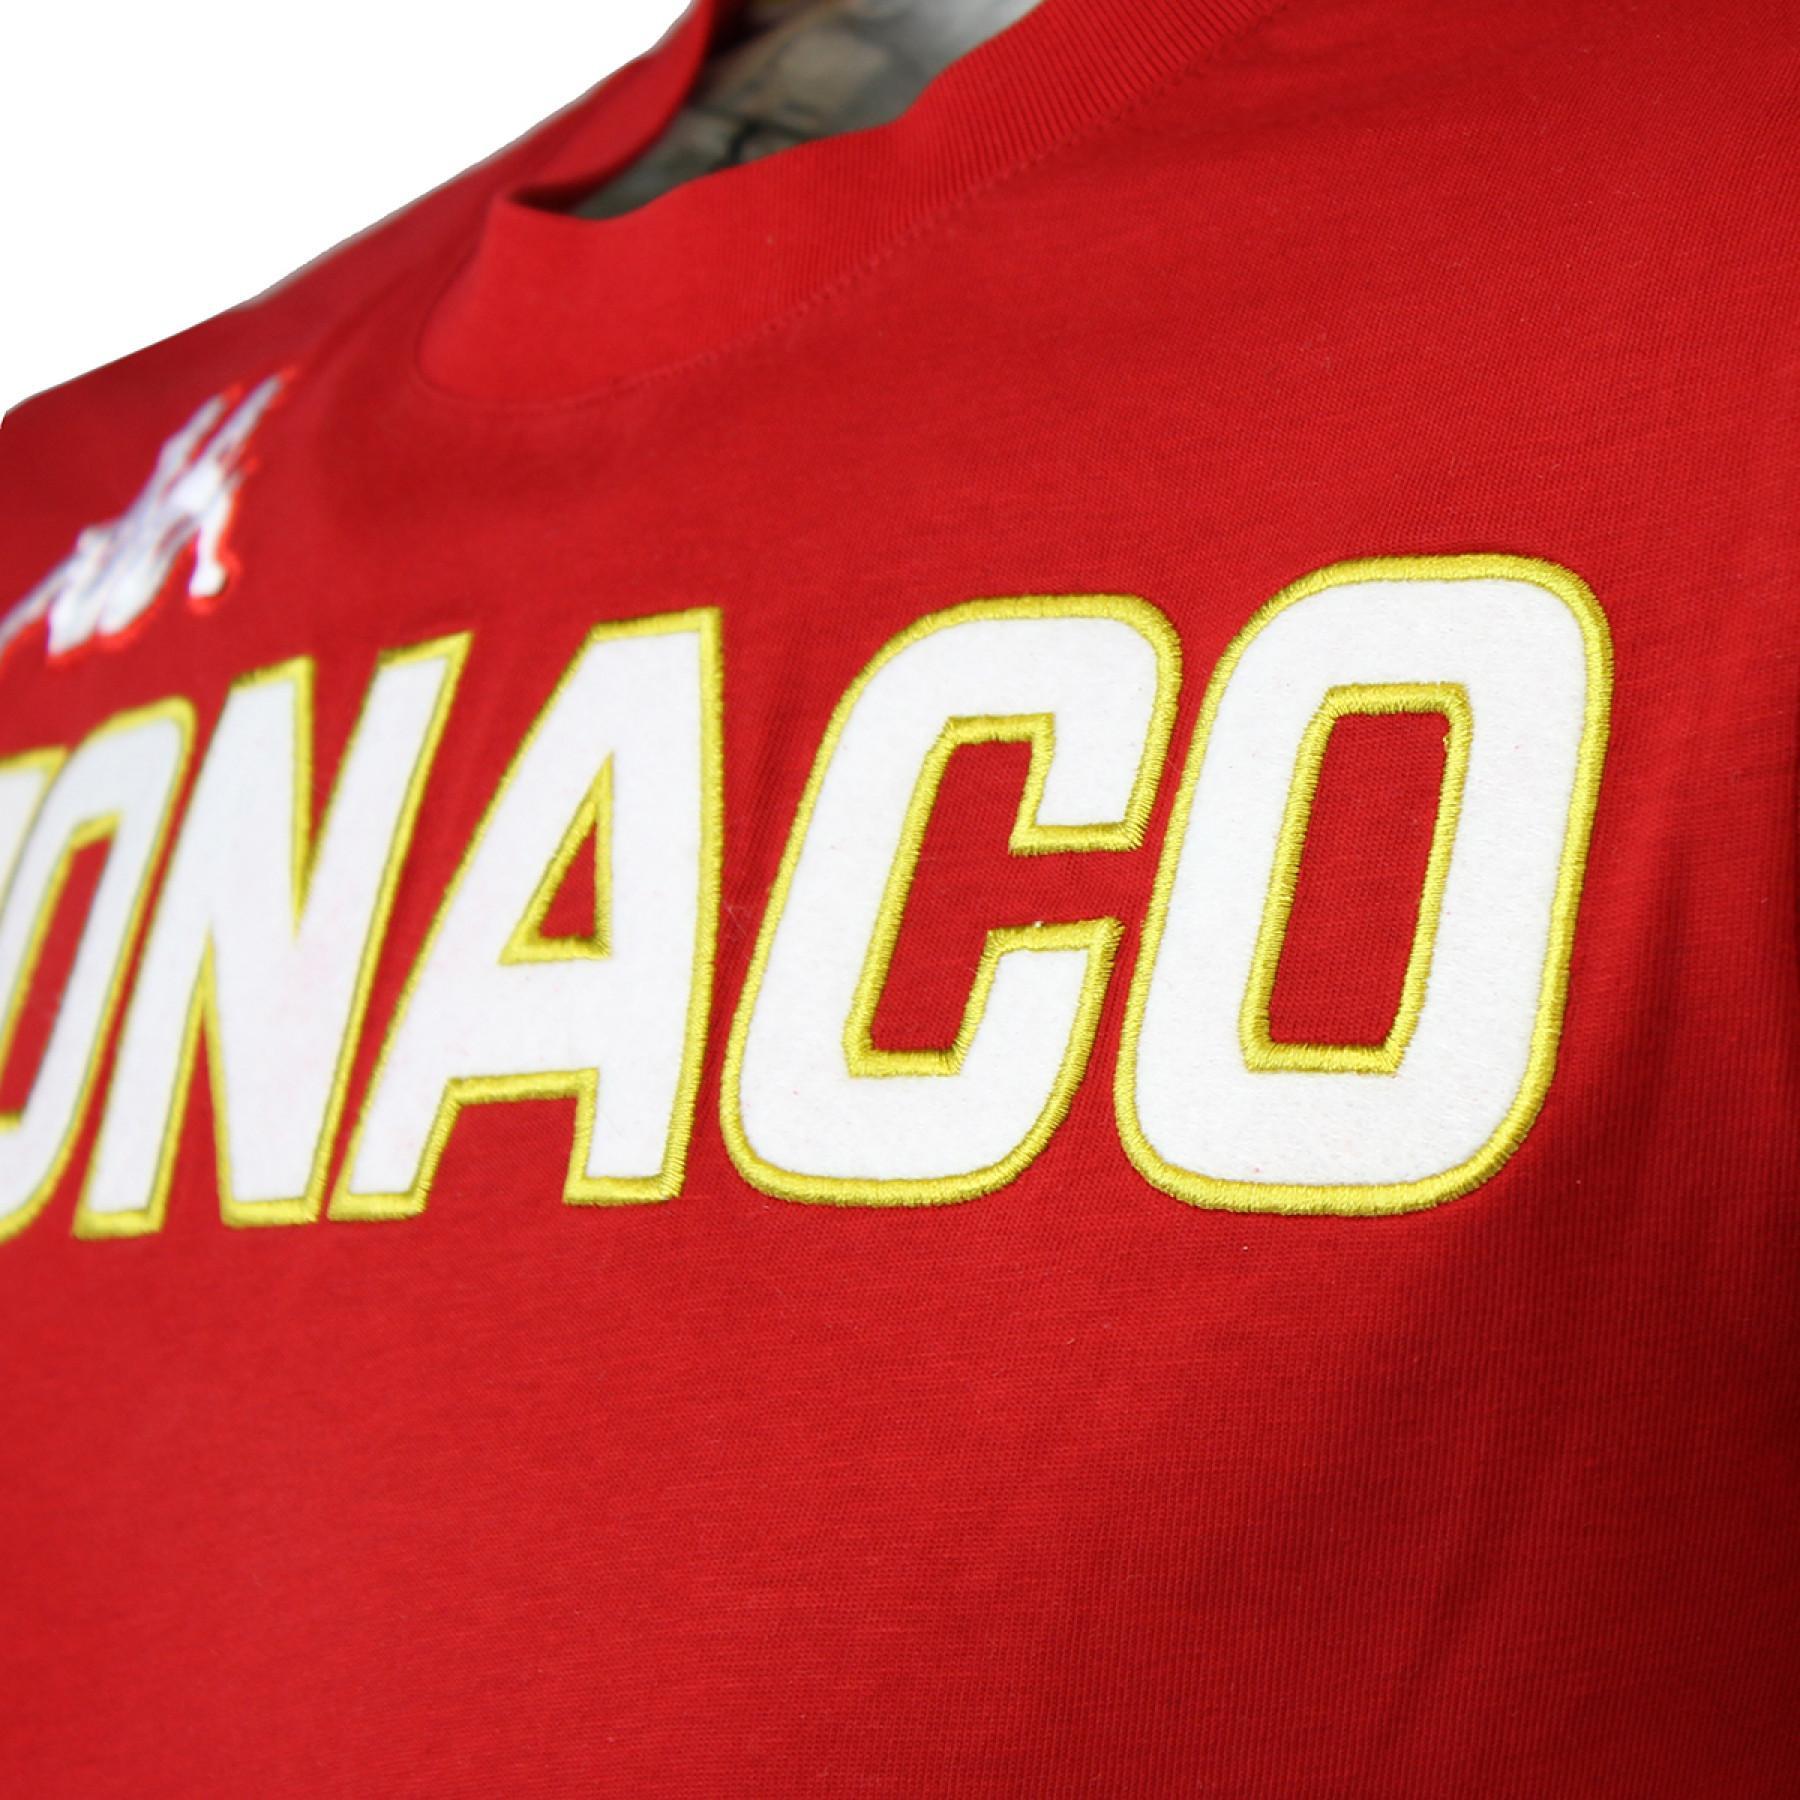 Koszulka dziecko eroi tee AS Monaco